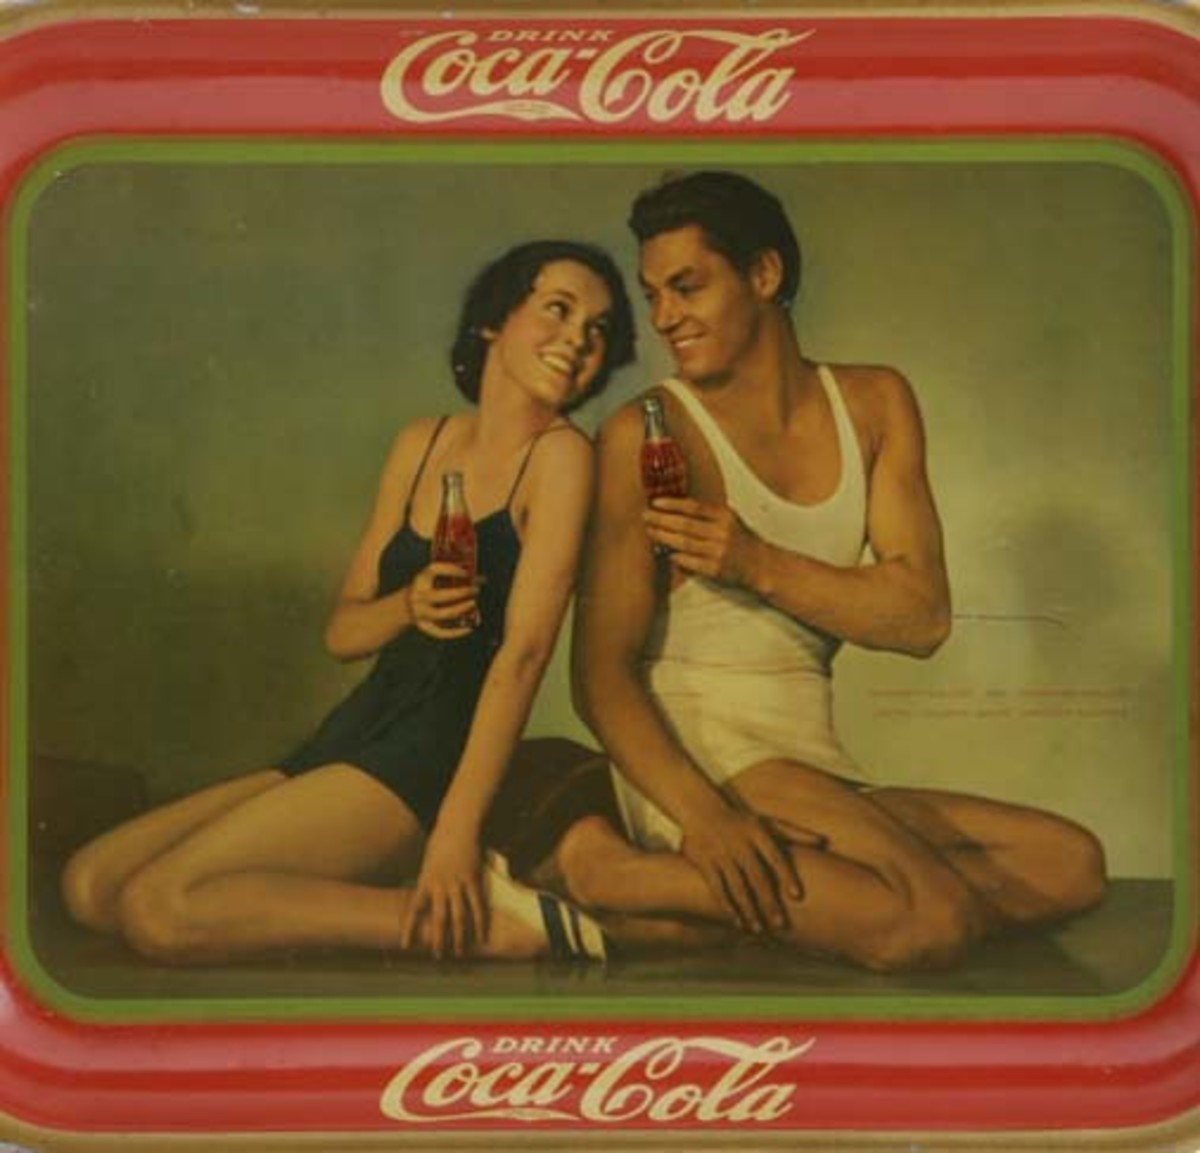 Figure 3: Original Coca-Cola tray. From the Martin Guide to Coca-Cola Memorabilia (used with permission).